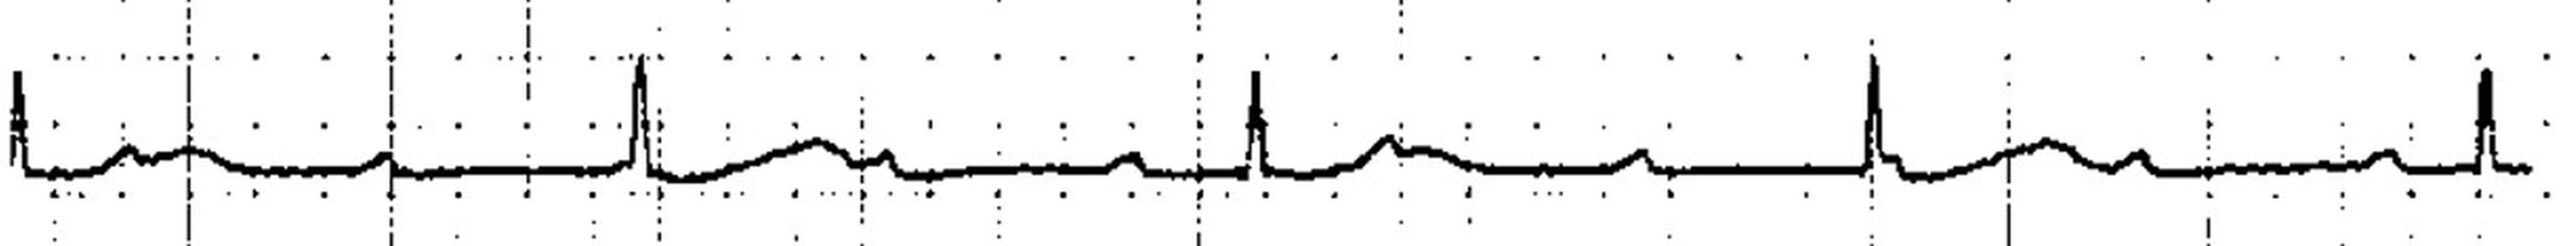 ECG showing complete heart block